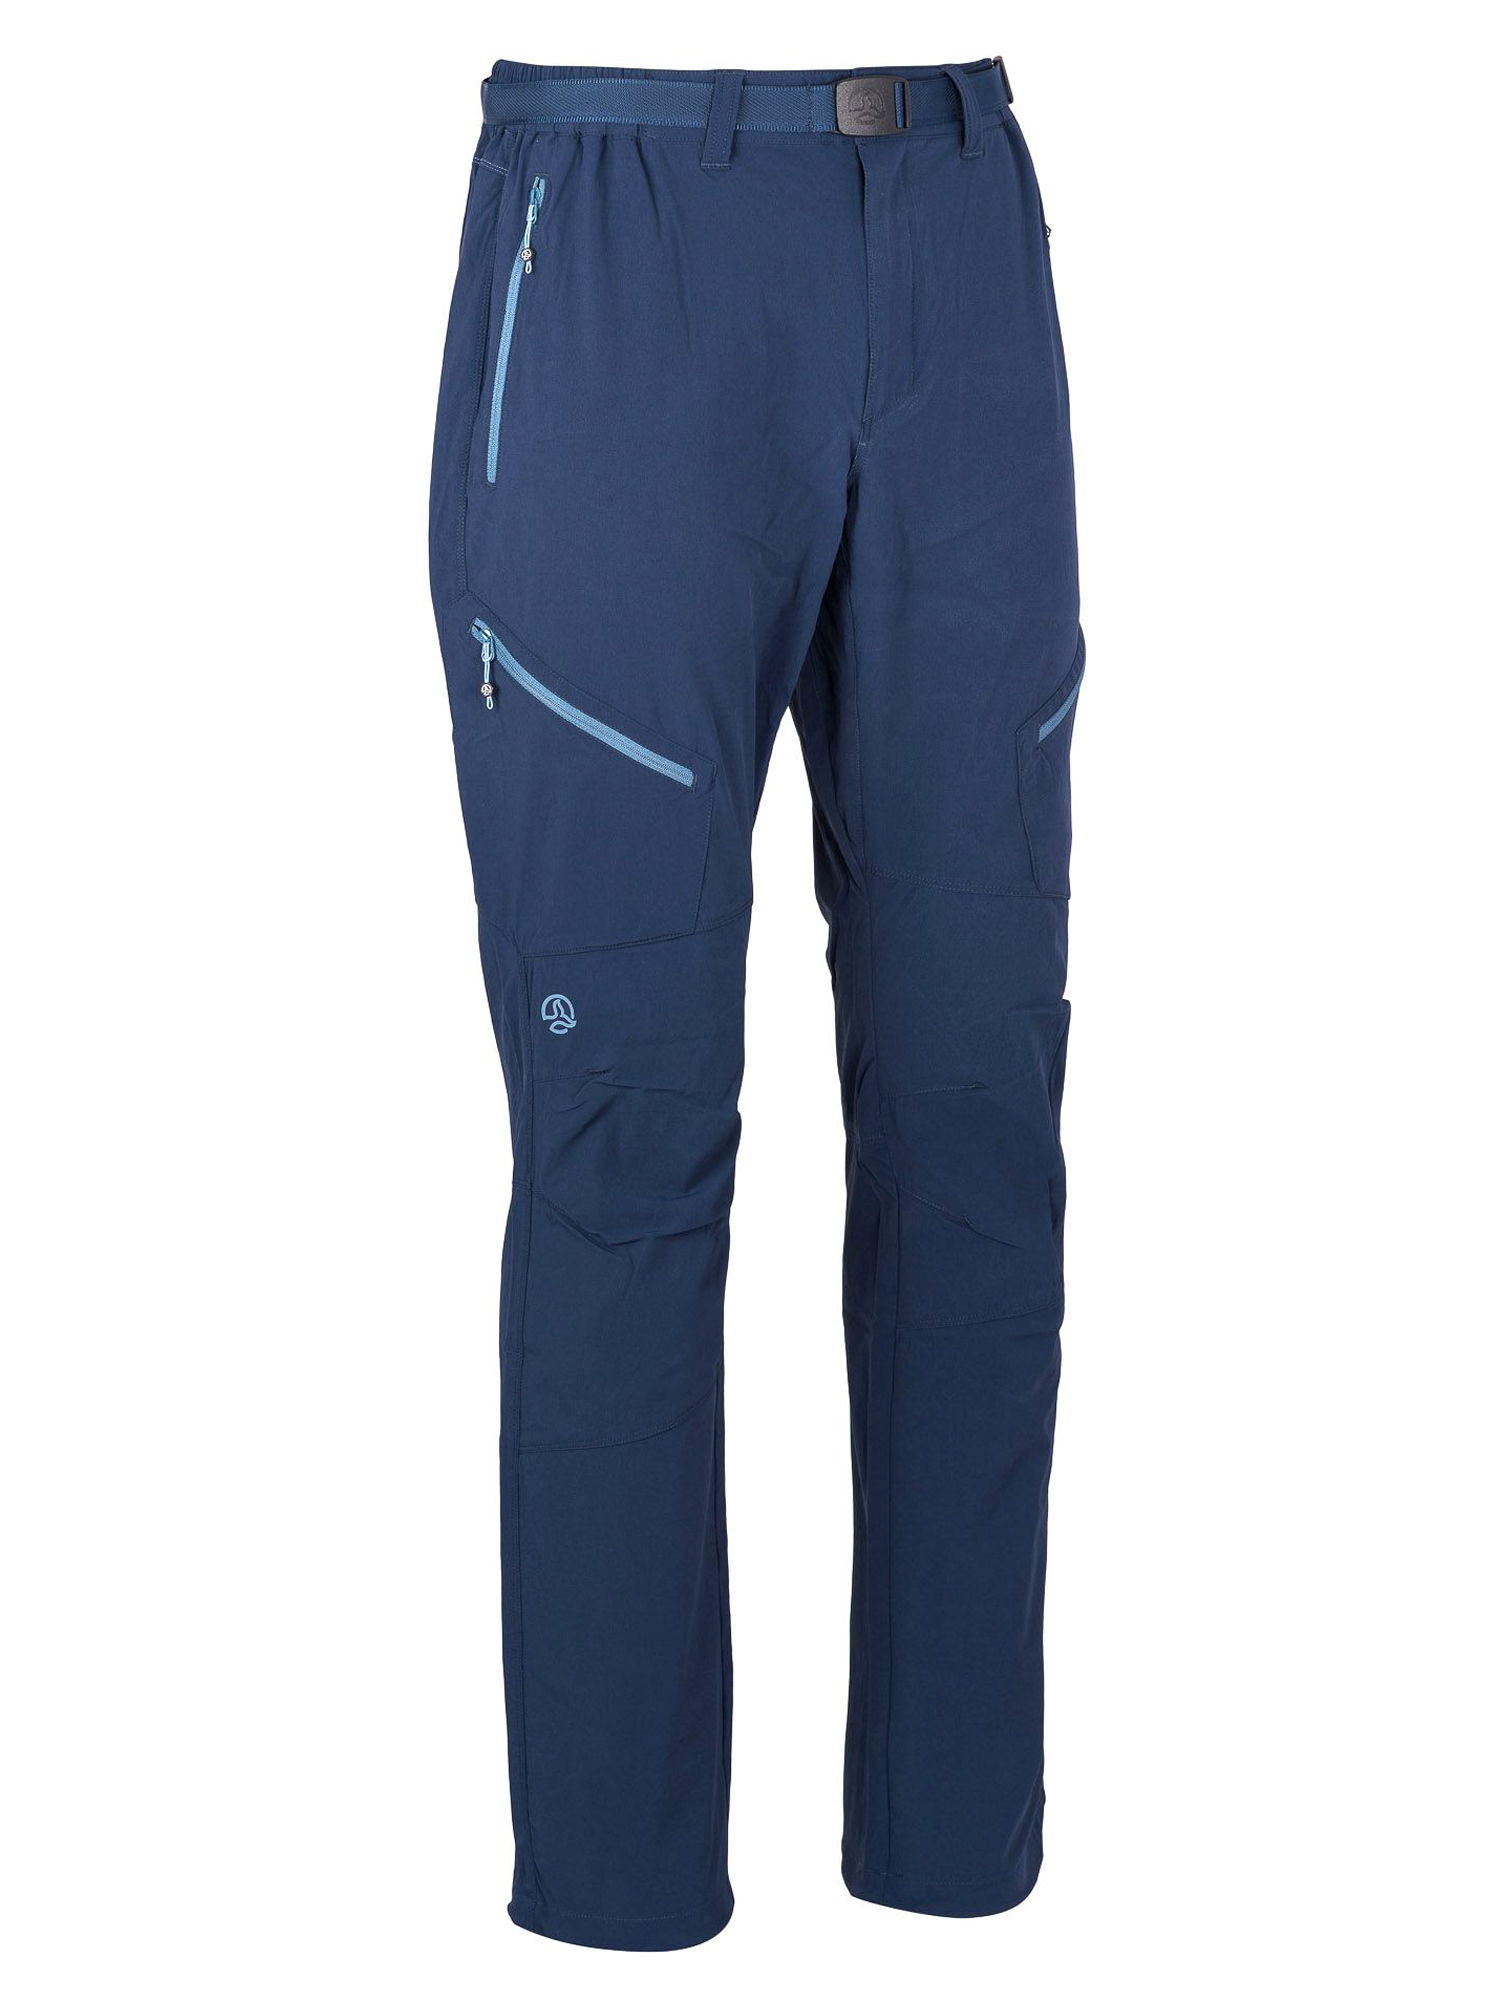 Спортивные брюки мужские Ternua Torlok Pt M синие XL